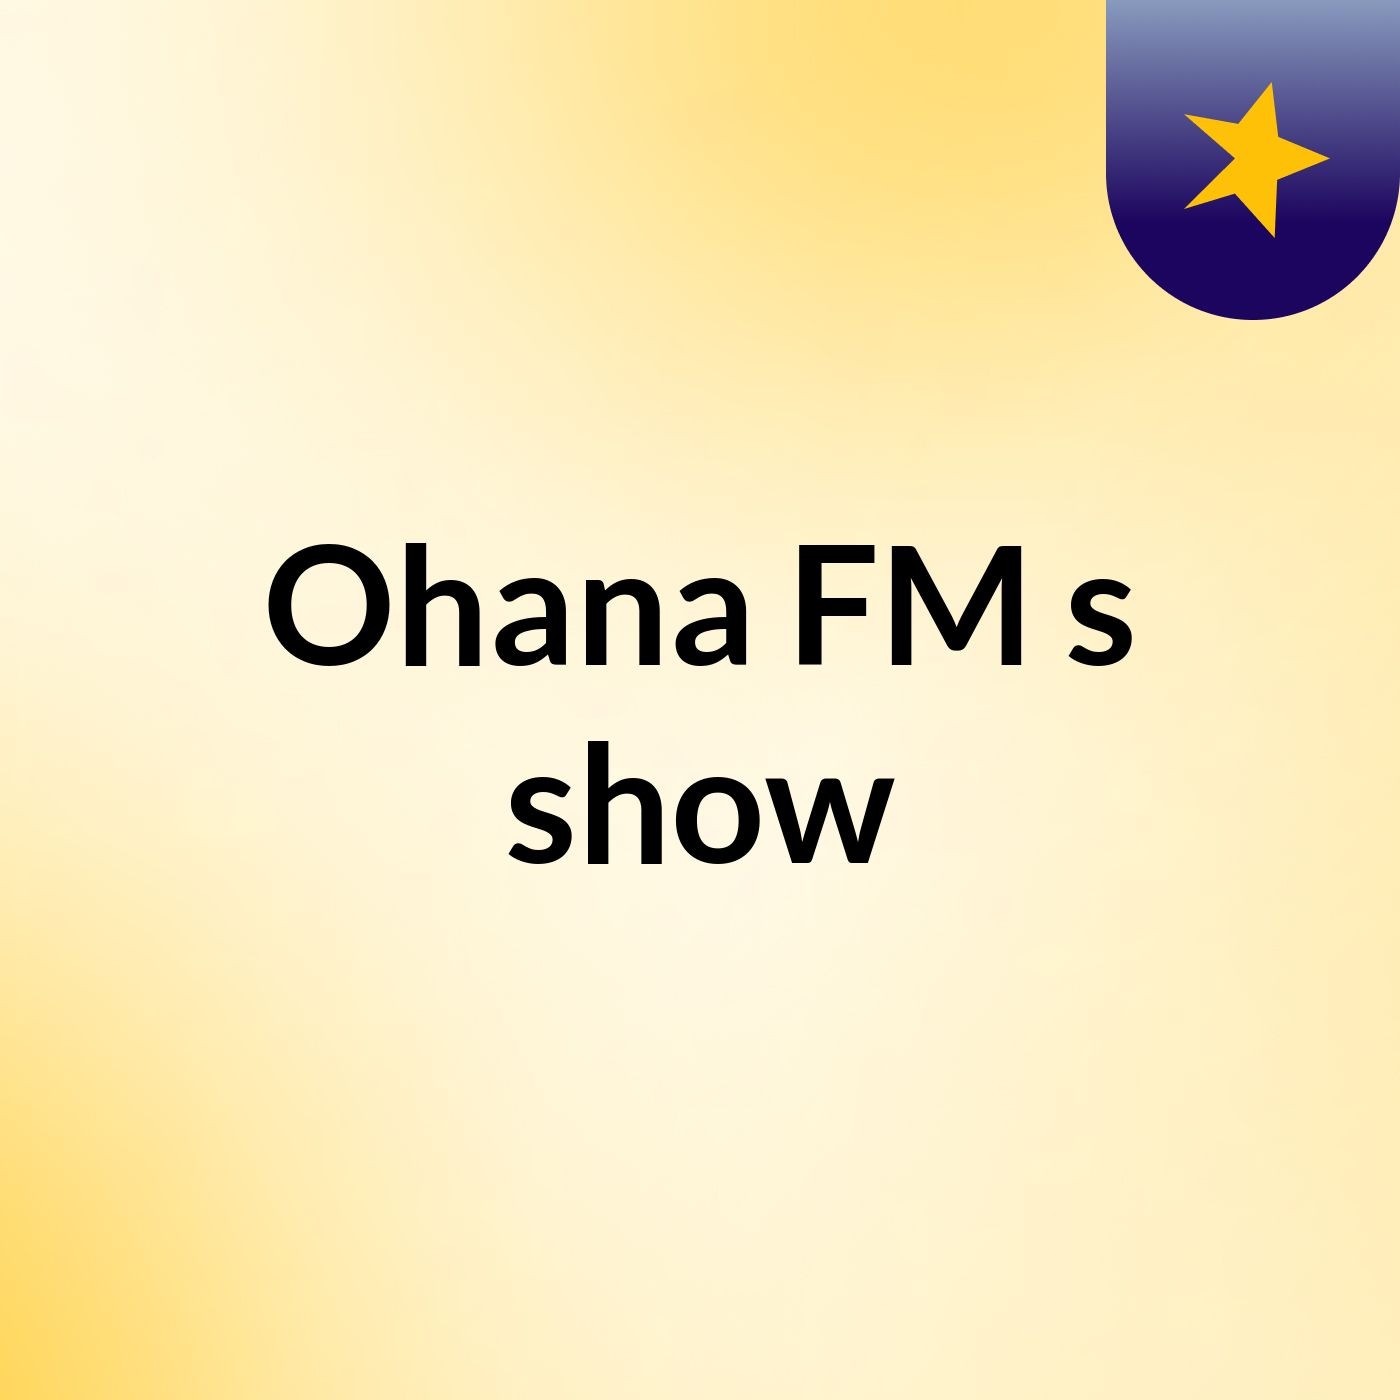 Ohana FM's show